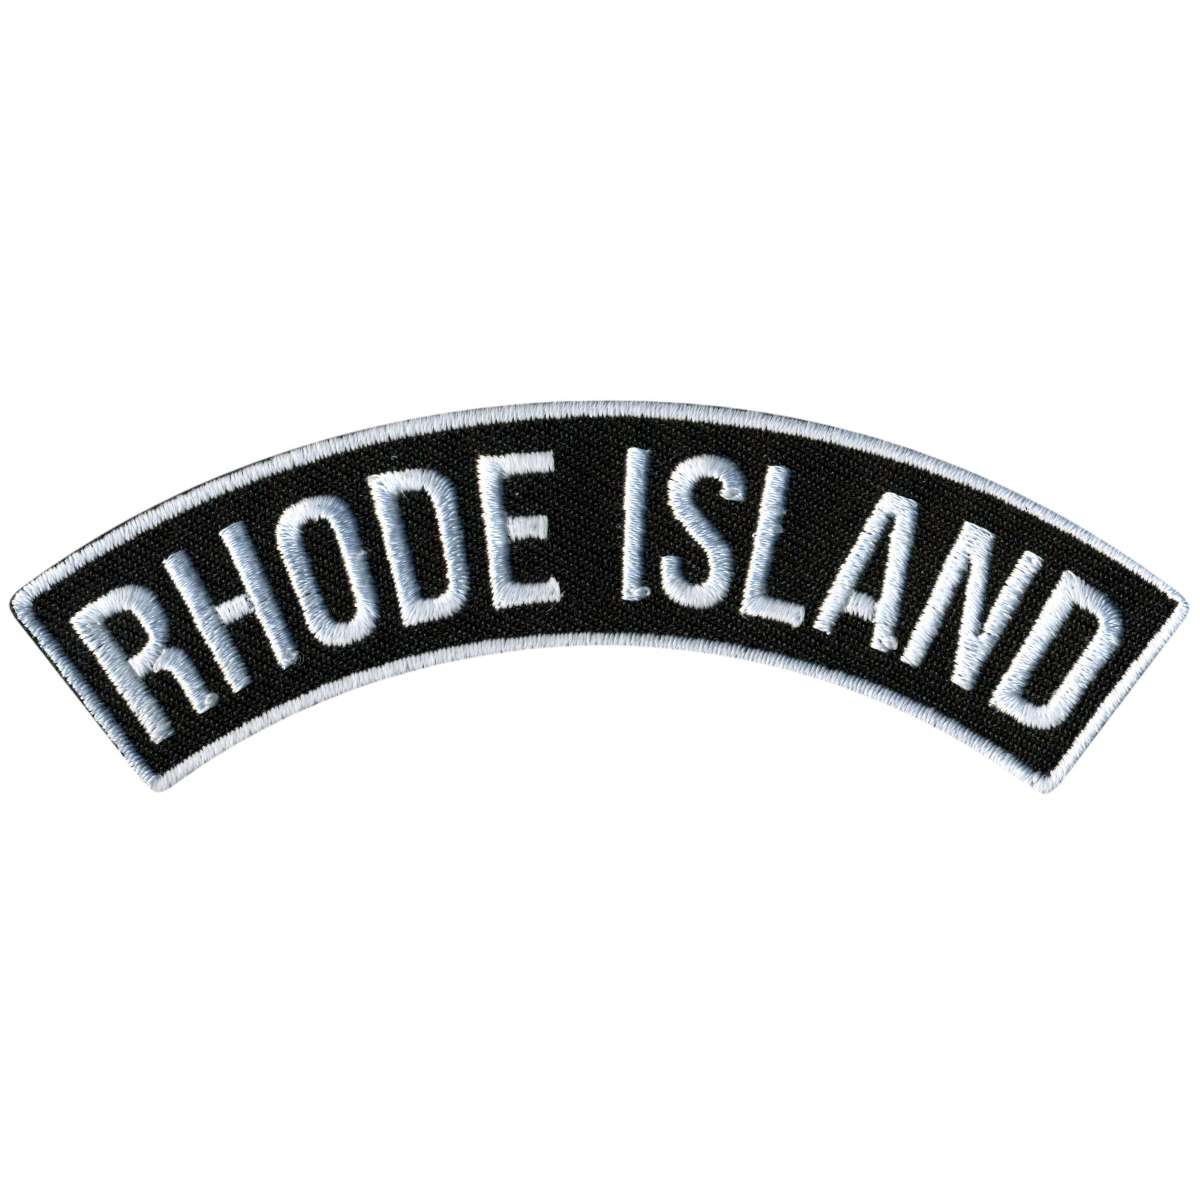 Hot Leathers Rhode Island 4” X 1” Top Rocker Patch PPM4078